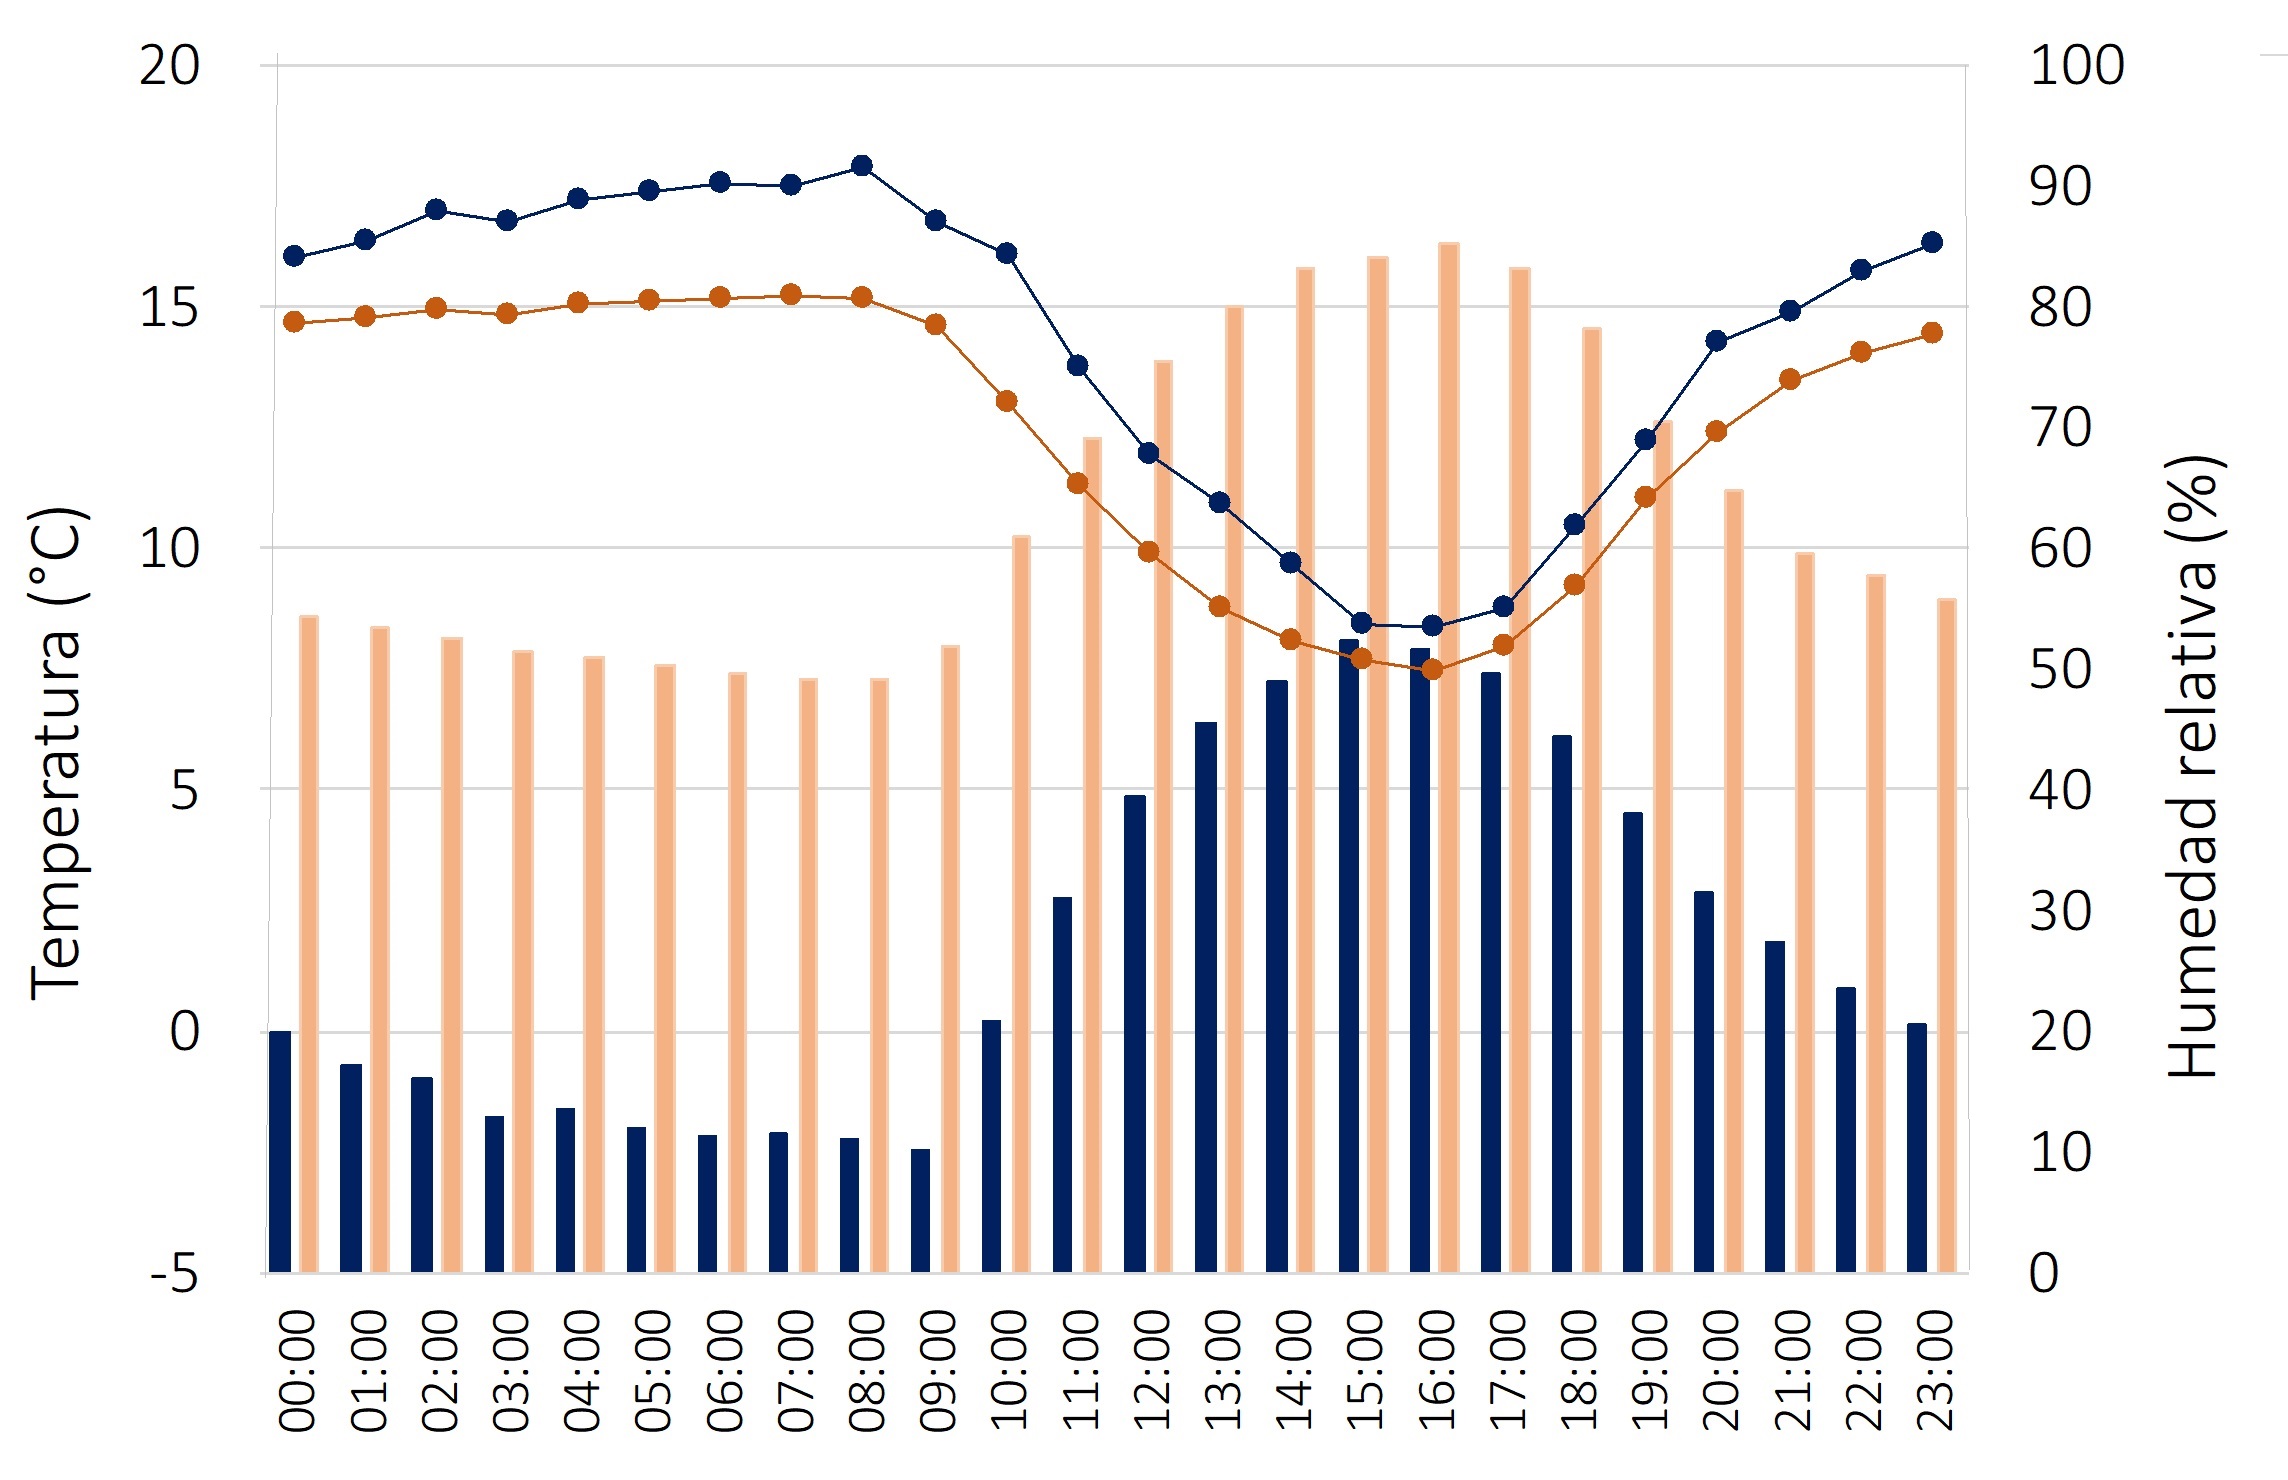 Distribución diaria de temperatura del semestre frío
(1961-2020) (barra naranja) y
temperatura durante OF (barra azul),
humedad relativa durante los eventos de OF (línea naranja )
y humedad relativa del semestre frío (línea azul).